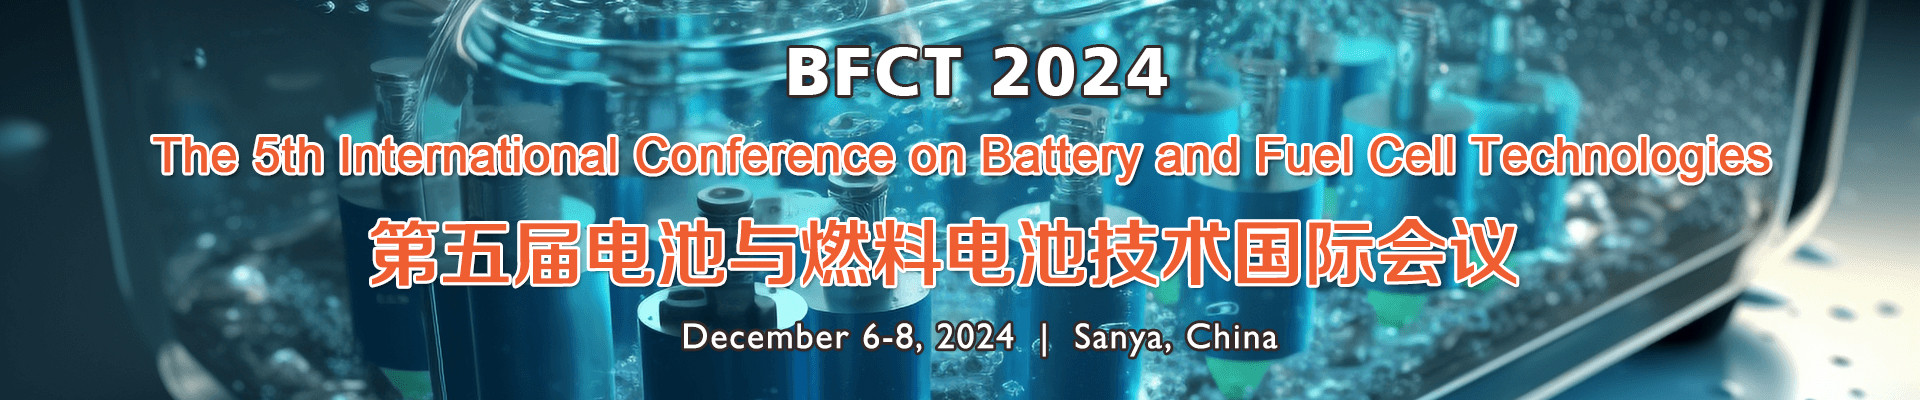 第五届电池与燃料电池技术国际研讨会(BFCT 2024)